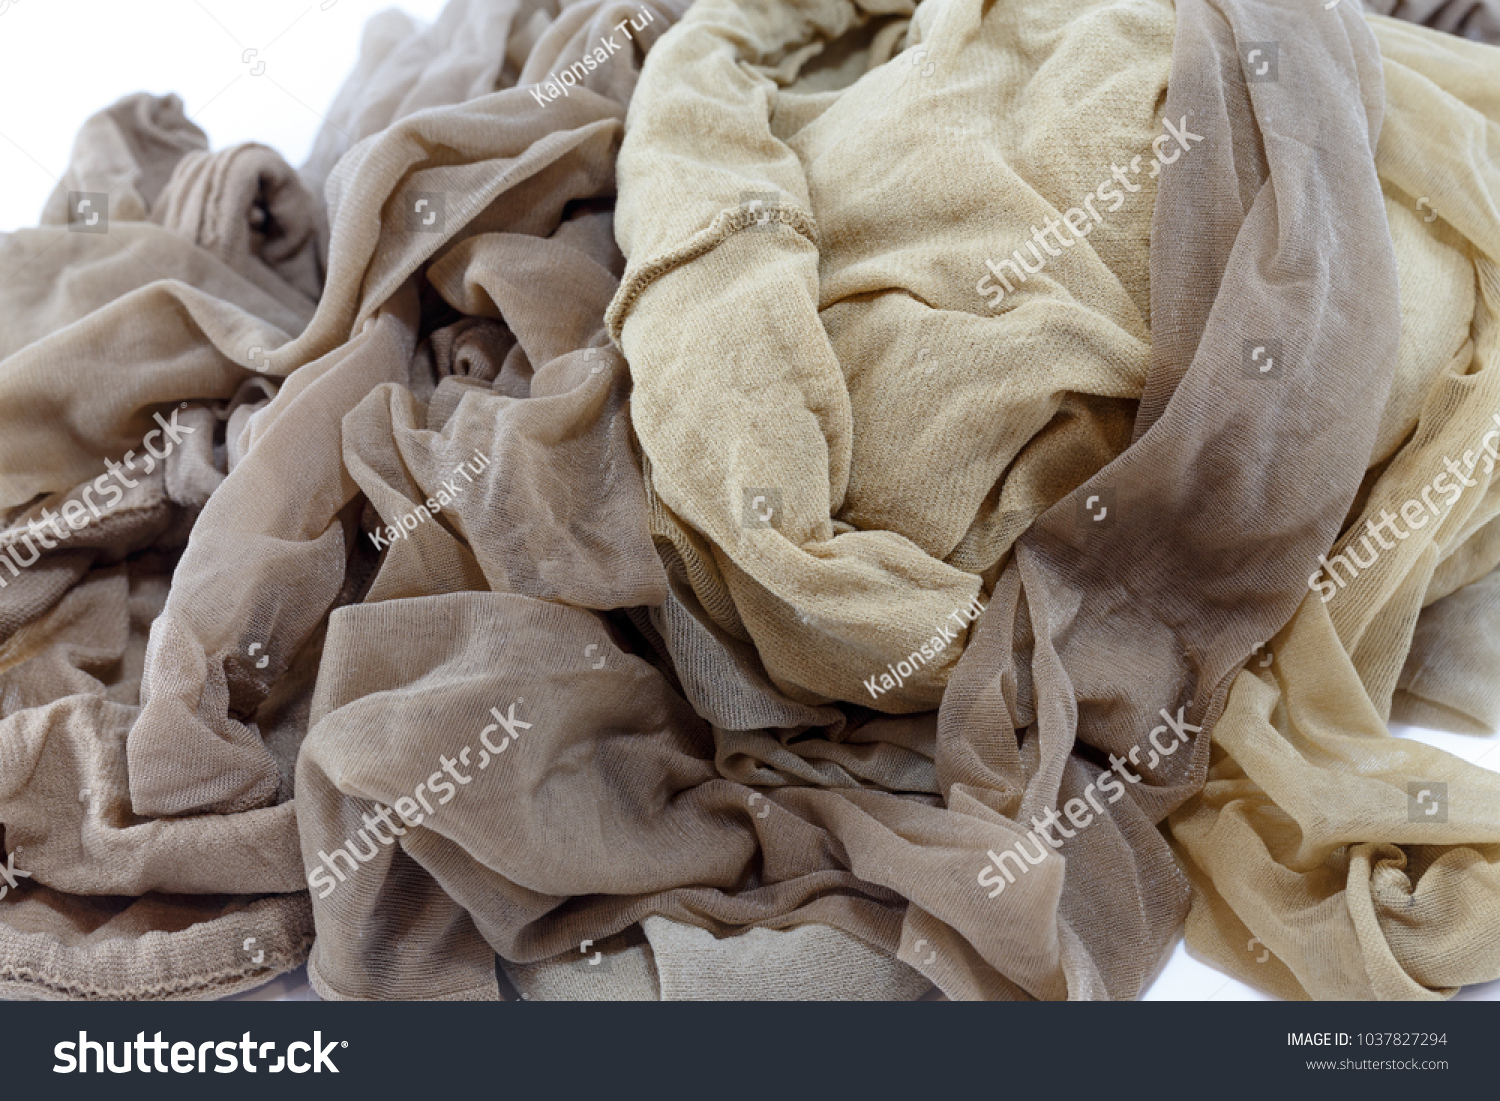 Women`s Used Nylon Pantyhose after Washing. Fetish. Stock Image - Image of  washing, worn: 158706977